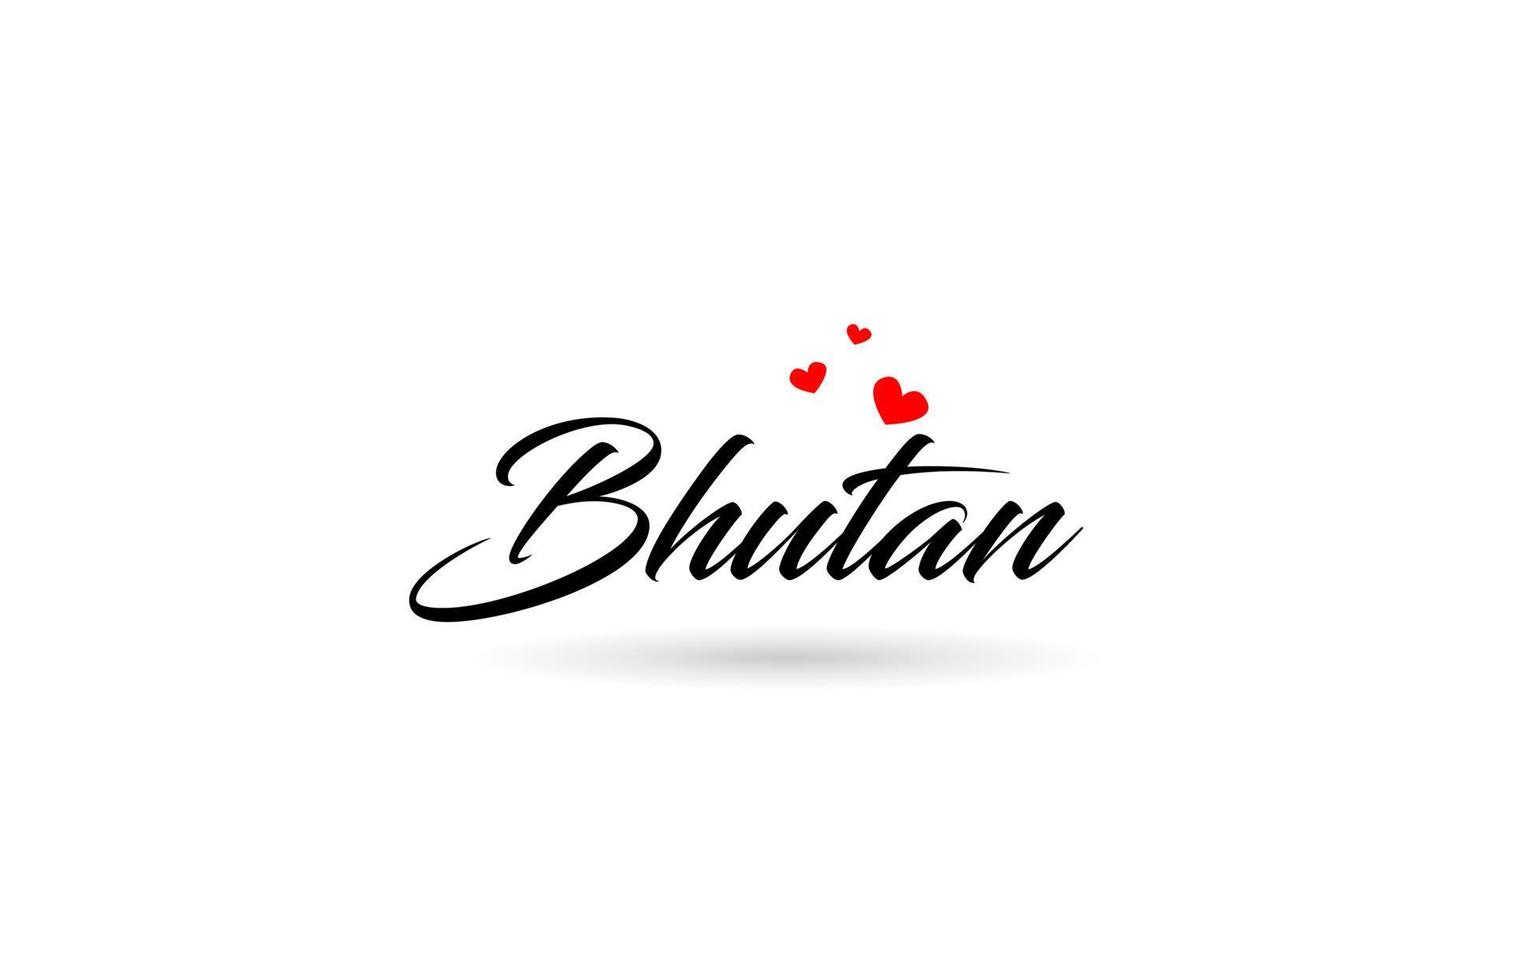 Bhutan naam land woord met drie rood liefde hart. creatief typografie logo icoon ontwerp vector